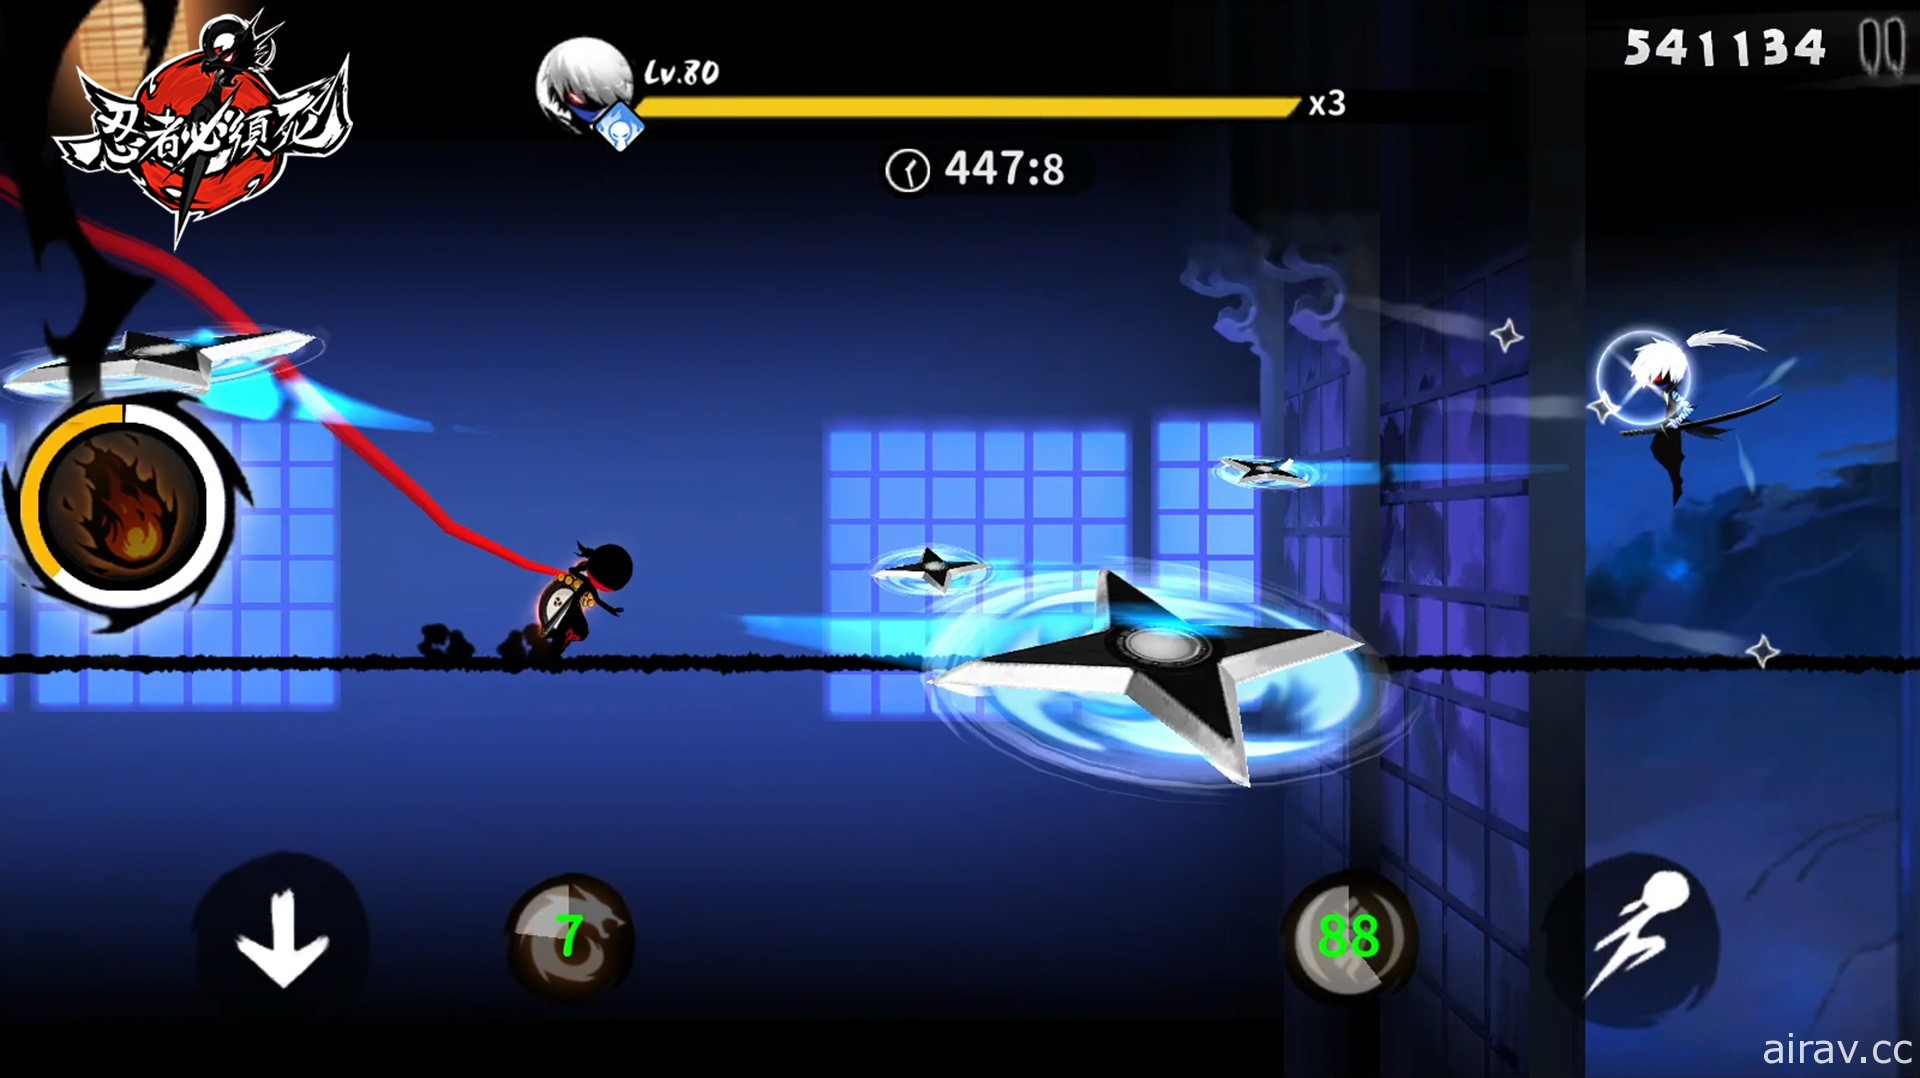 戰鬥跑酷遊戲《忍者必須死》雙平台上線 多項開服活動同步開跑